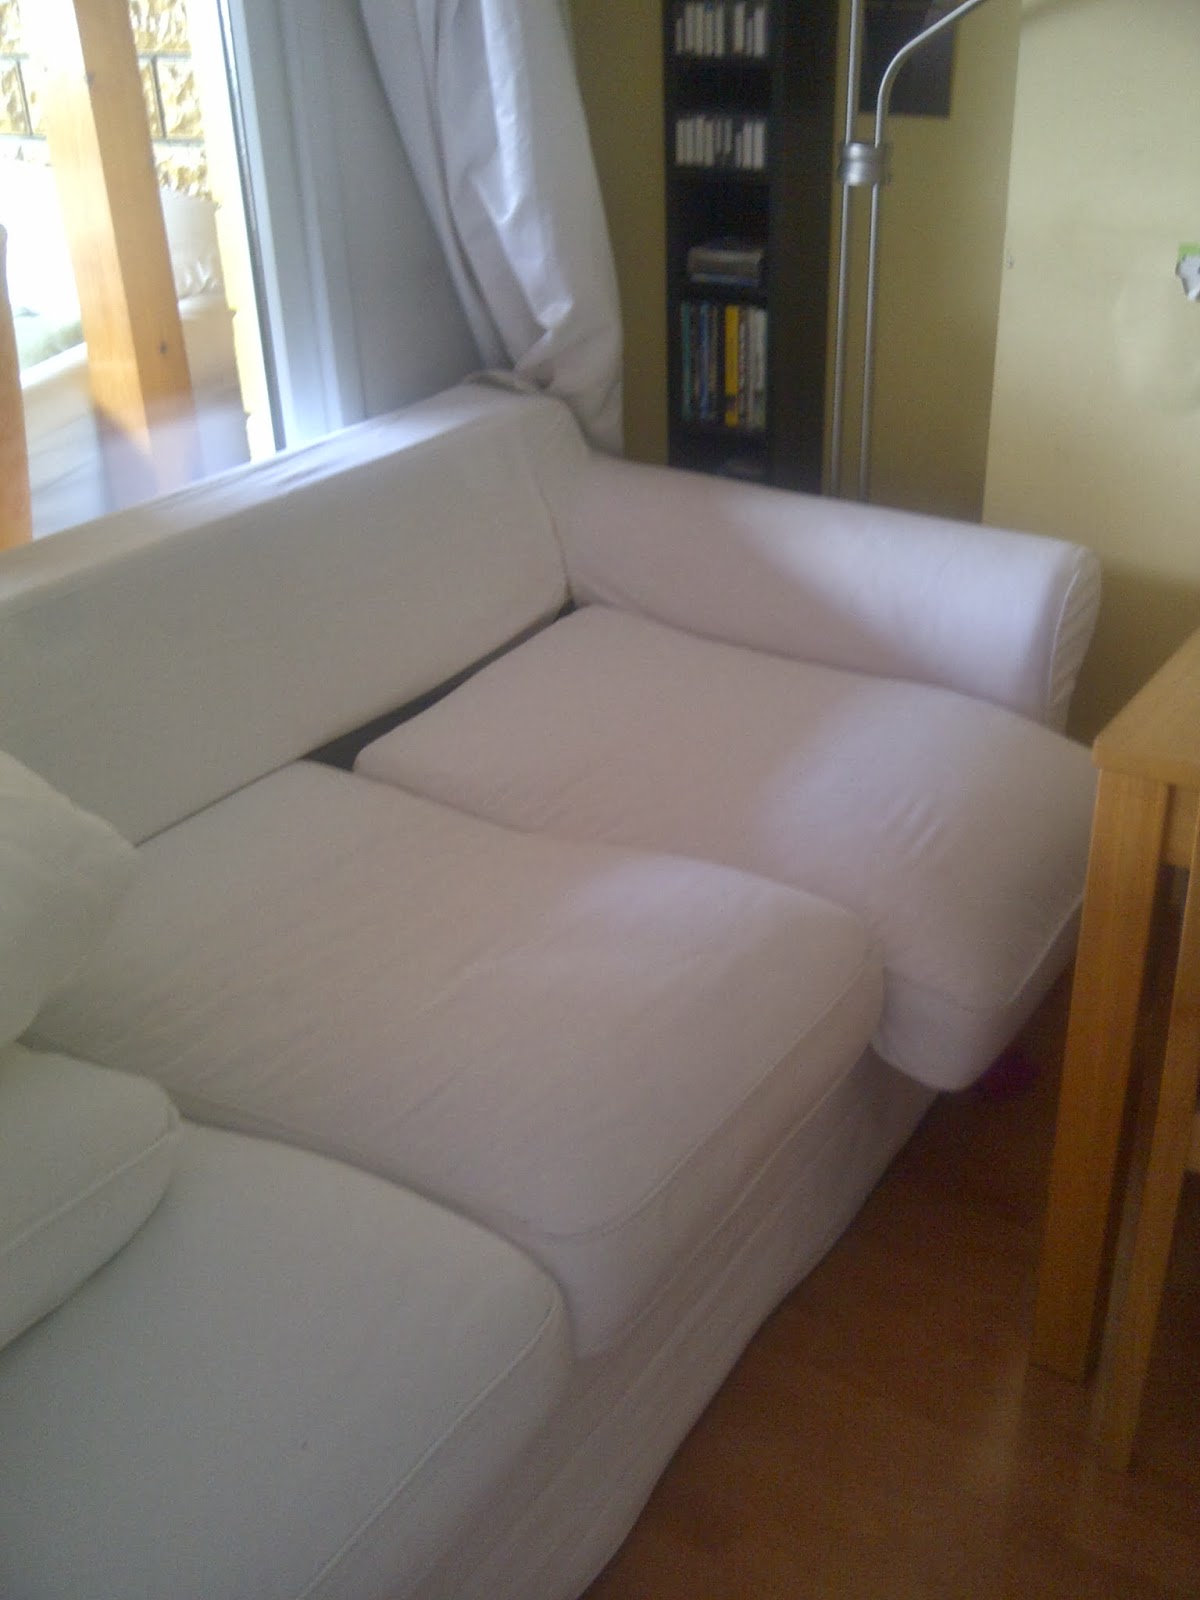 IKEA Ektorp yataklı koltuk sakın almayın, çok pişman olursunuz